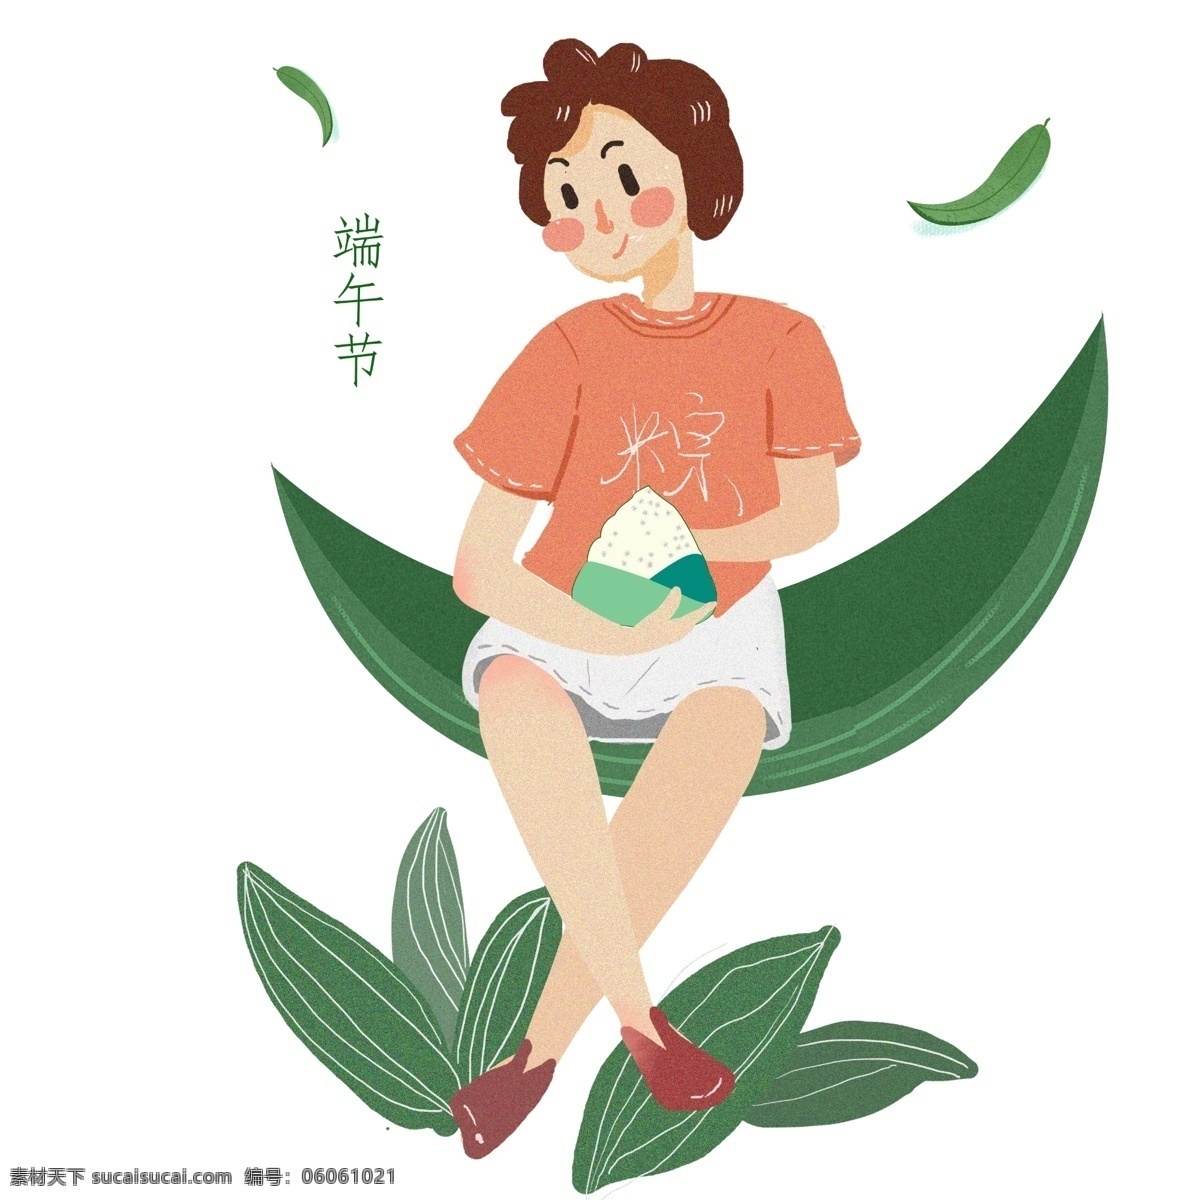 端午节 吃 粽子 女孩 手绘 插画 传统习俗 开心 夏天 清凉 包粽子 吃粽子 传统 卷发